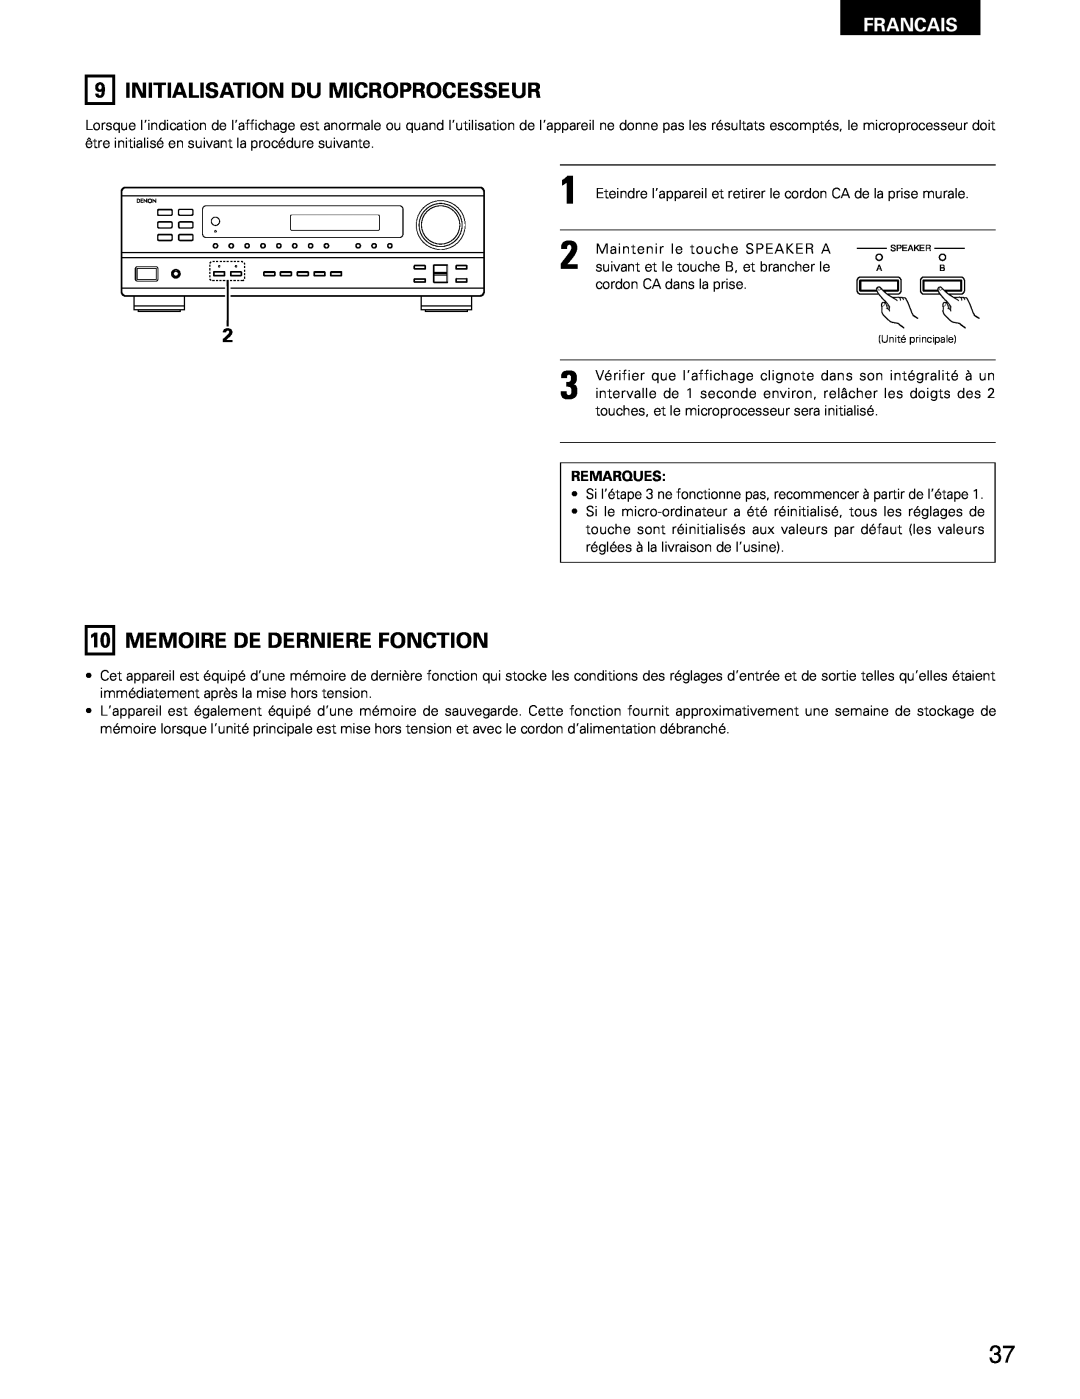 Denon DRA-295 manual Initialisation Du Microprocesseur, 10MEMOIRE DE DERNIERE FONCTION, Francais 